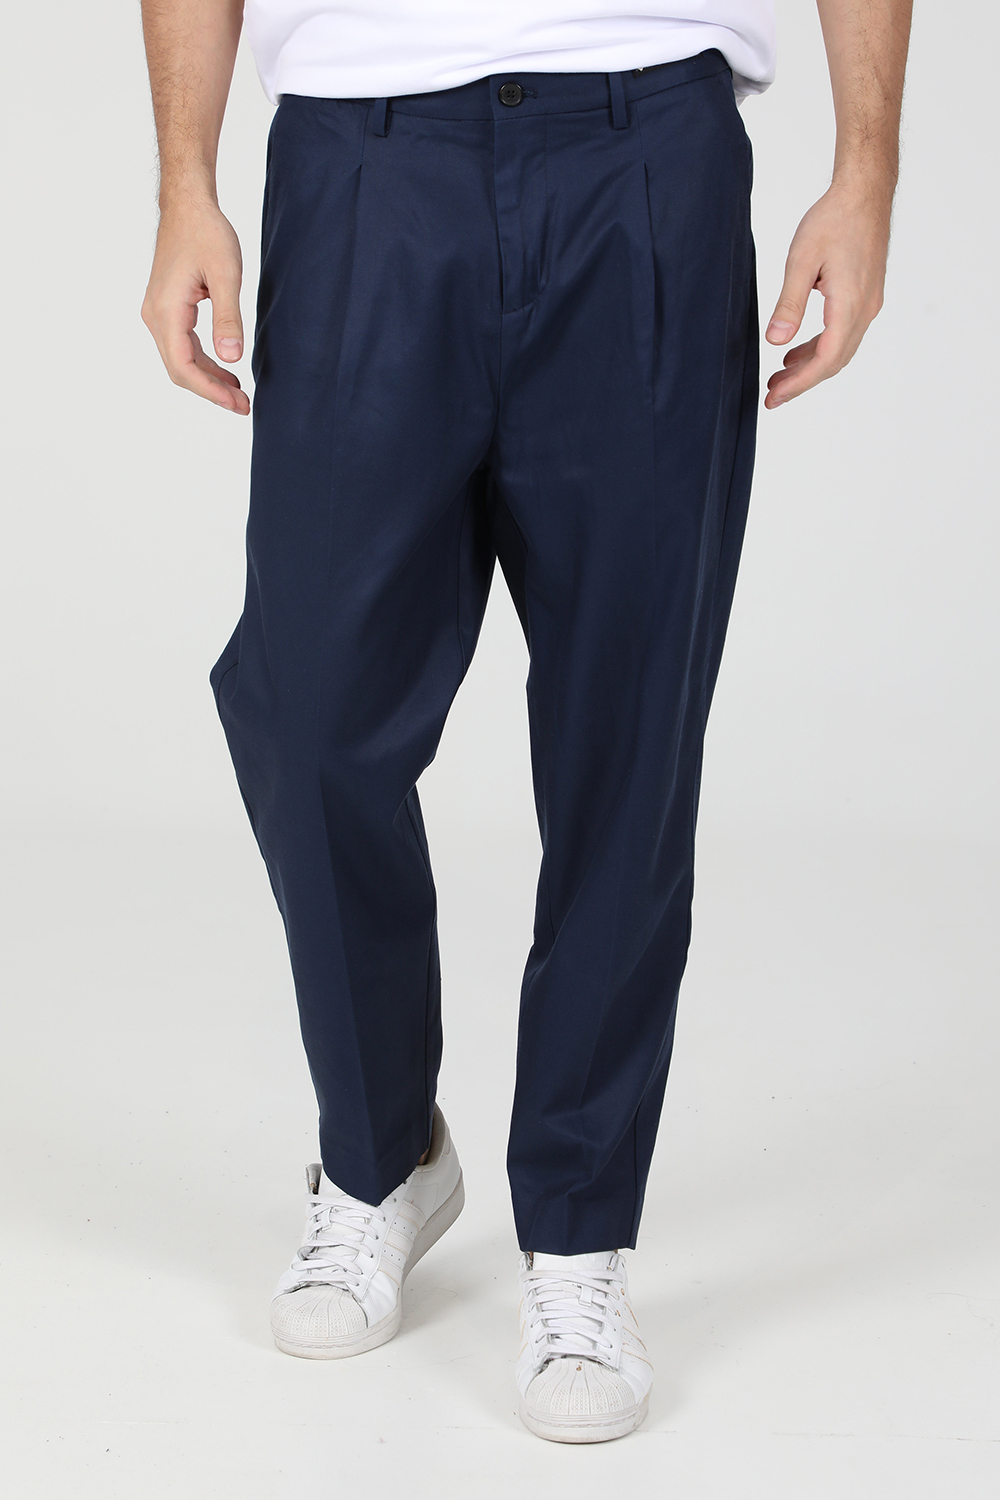 Ανδρικά/Ρούχα/Παντελόνια/Chinos SCOTCH & SODA - Ανδρικό jean παντελόνι SCOTCH & SODA SEASONAL FIT- Pleated chino μπλε